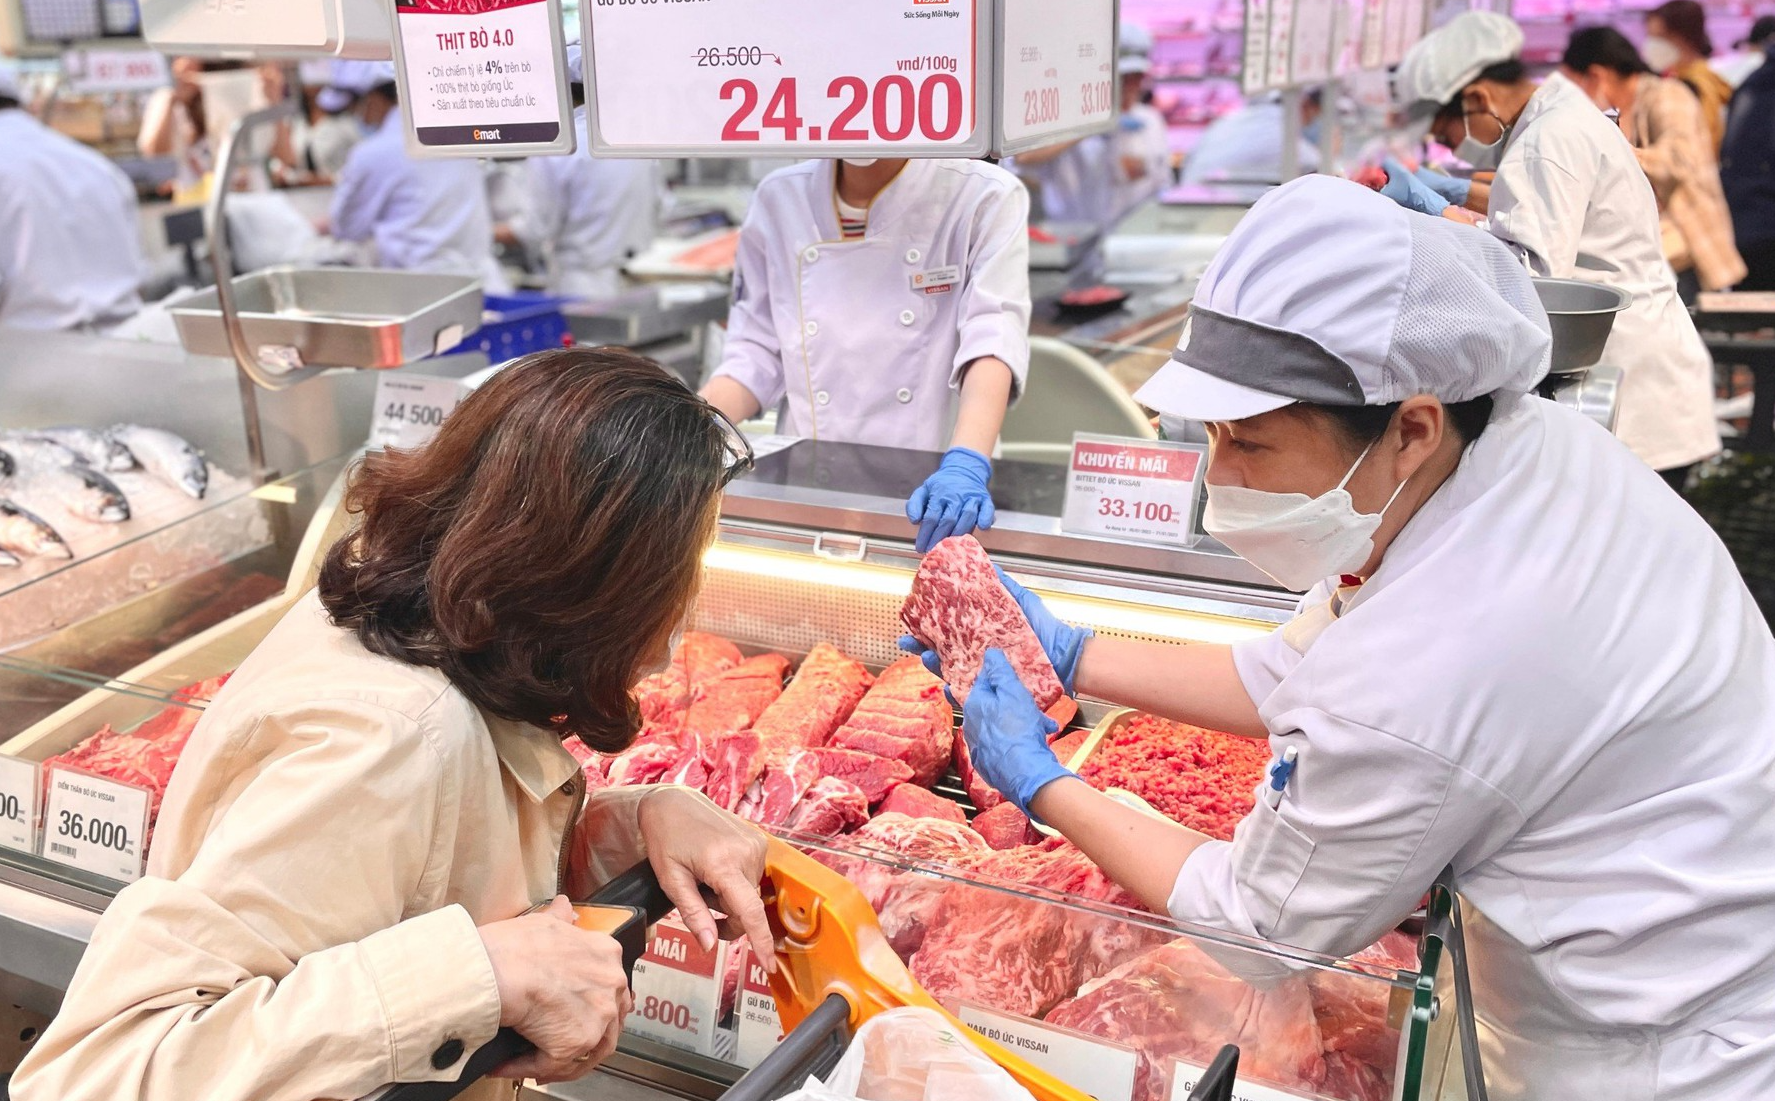 Doanh nghiệp, siêu thị chuẩn bị hàng Tết sớm, tuyên bố sẽ giảm giá mạnh để kích sức mua - Ảnh 2.